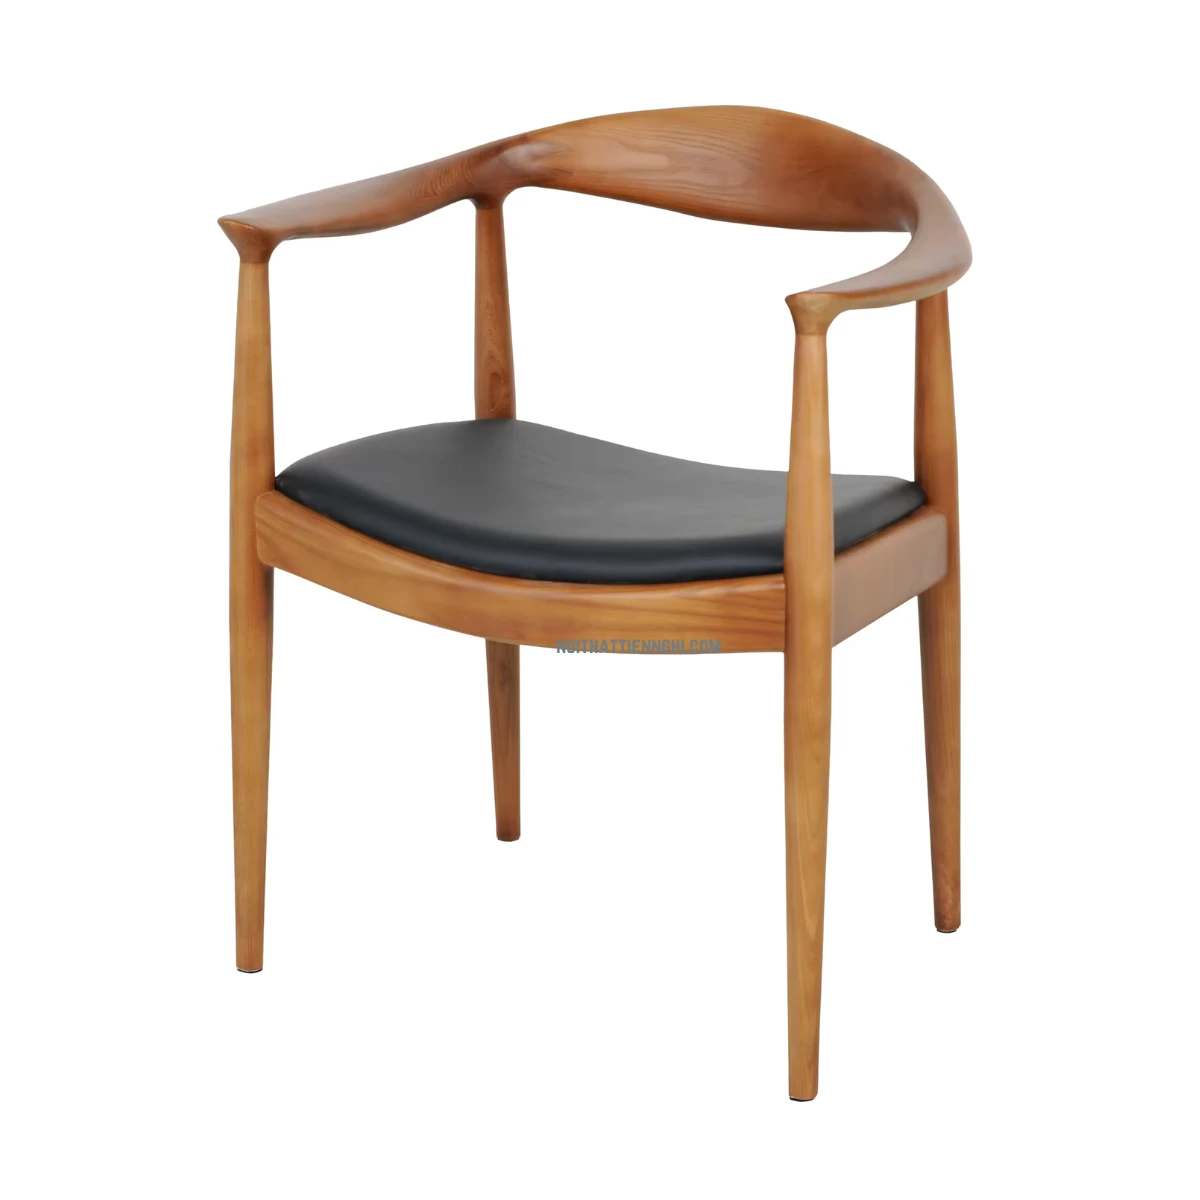 Ghế Kenedy cao cấp bằng gỗ cao su phủ pu thiết kế cổ điển